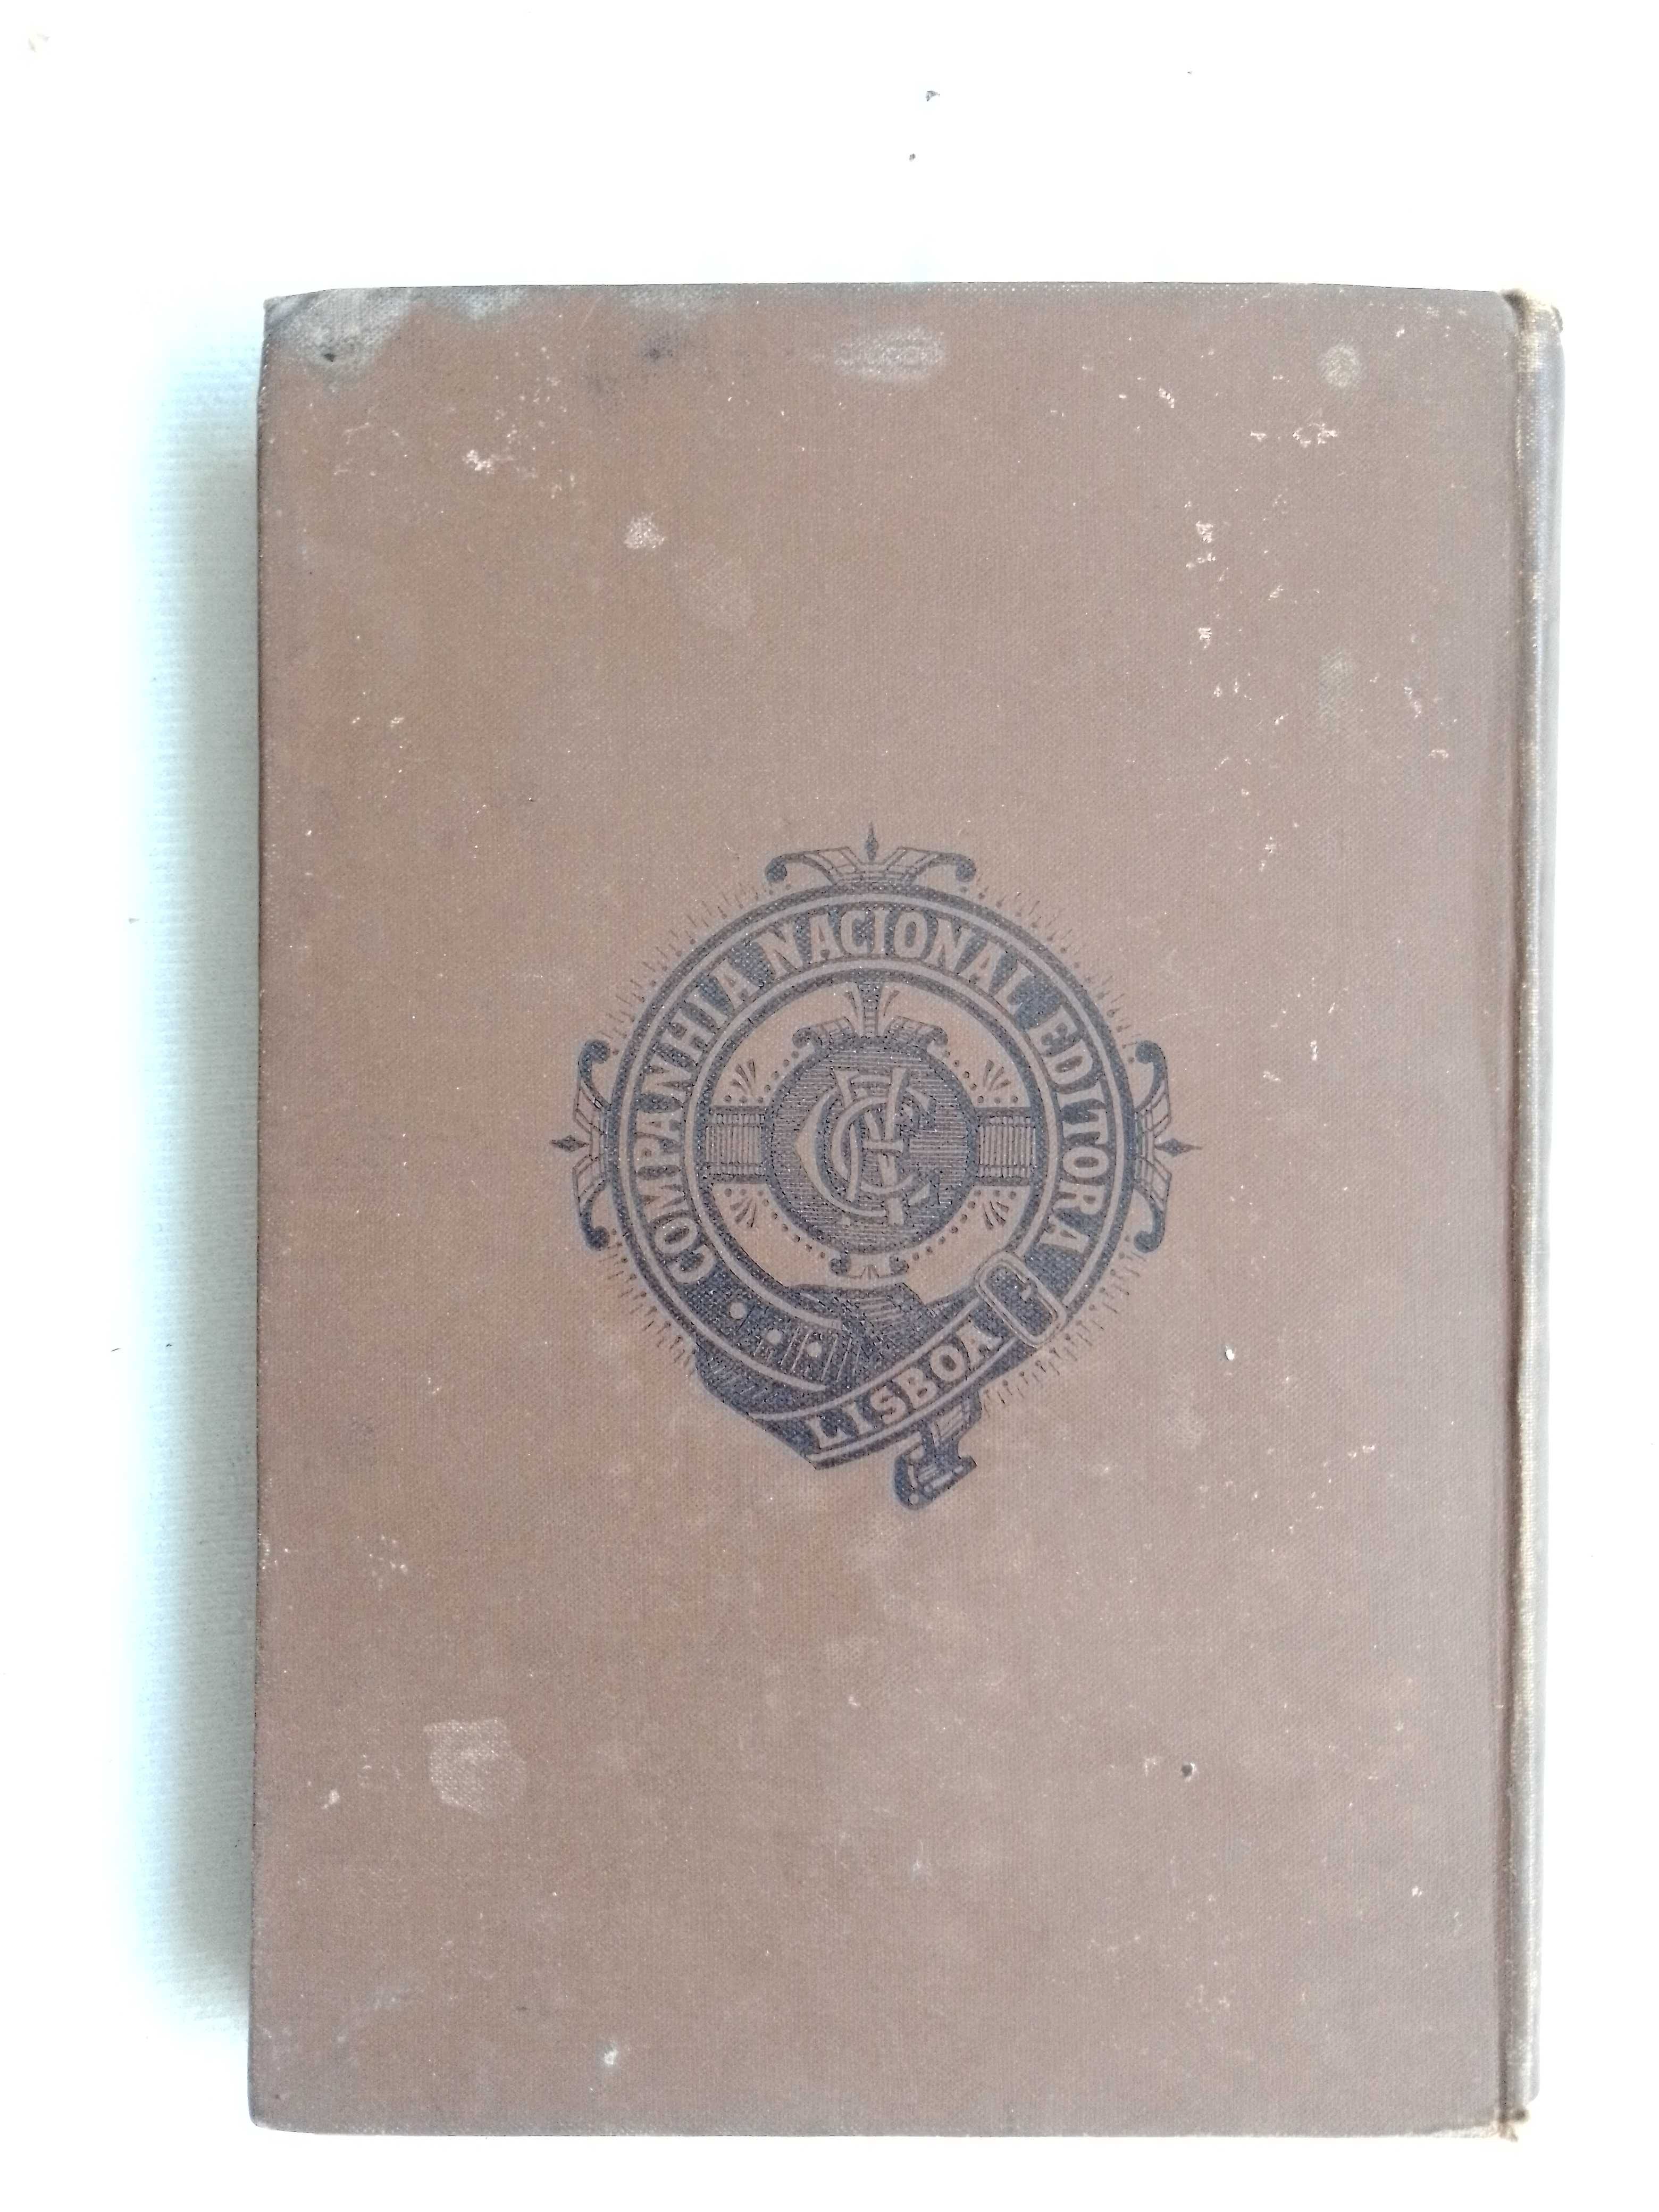 Antigo Livro de Júlio Verne ediçao de 1889